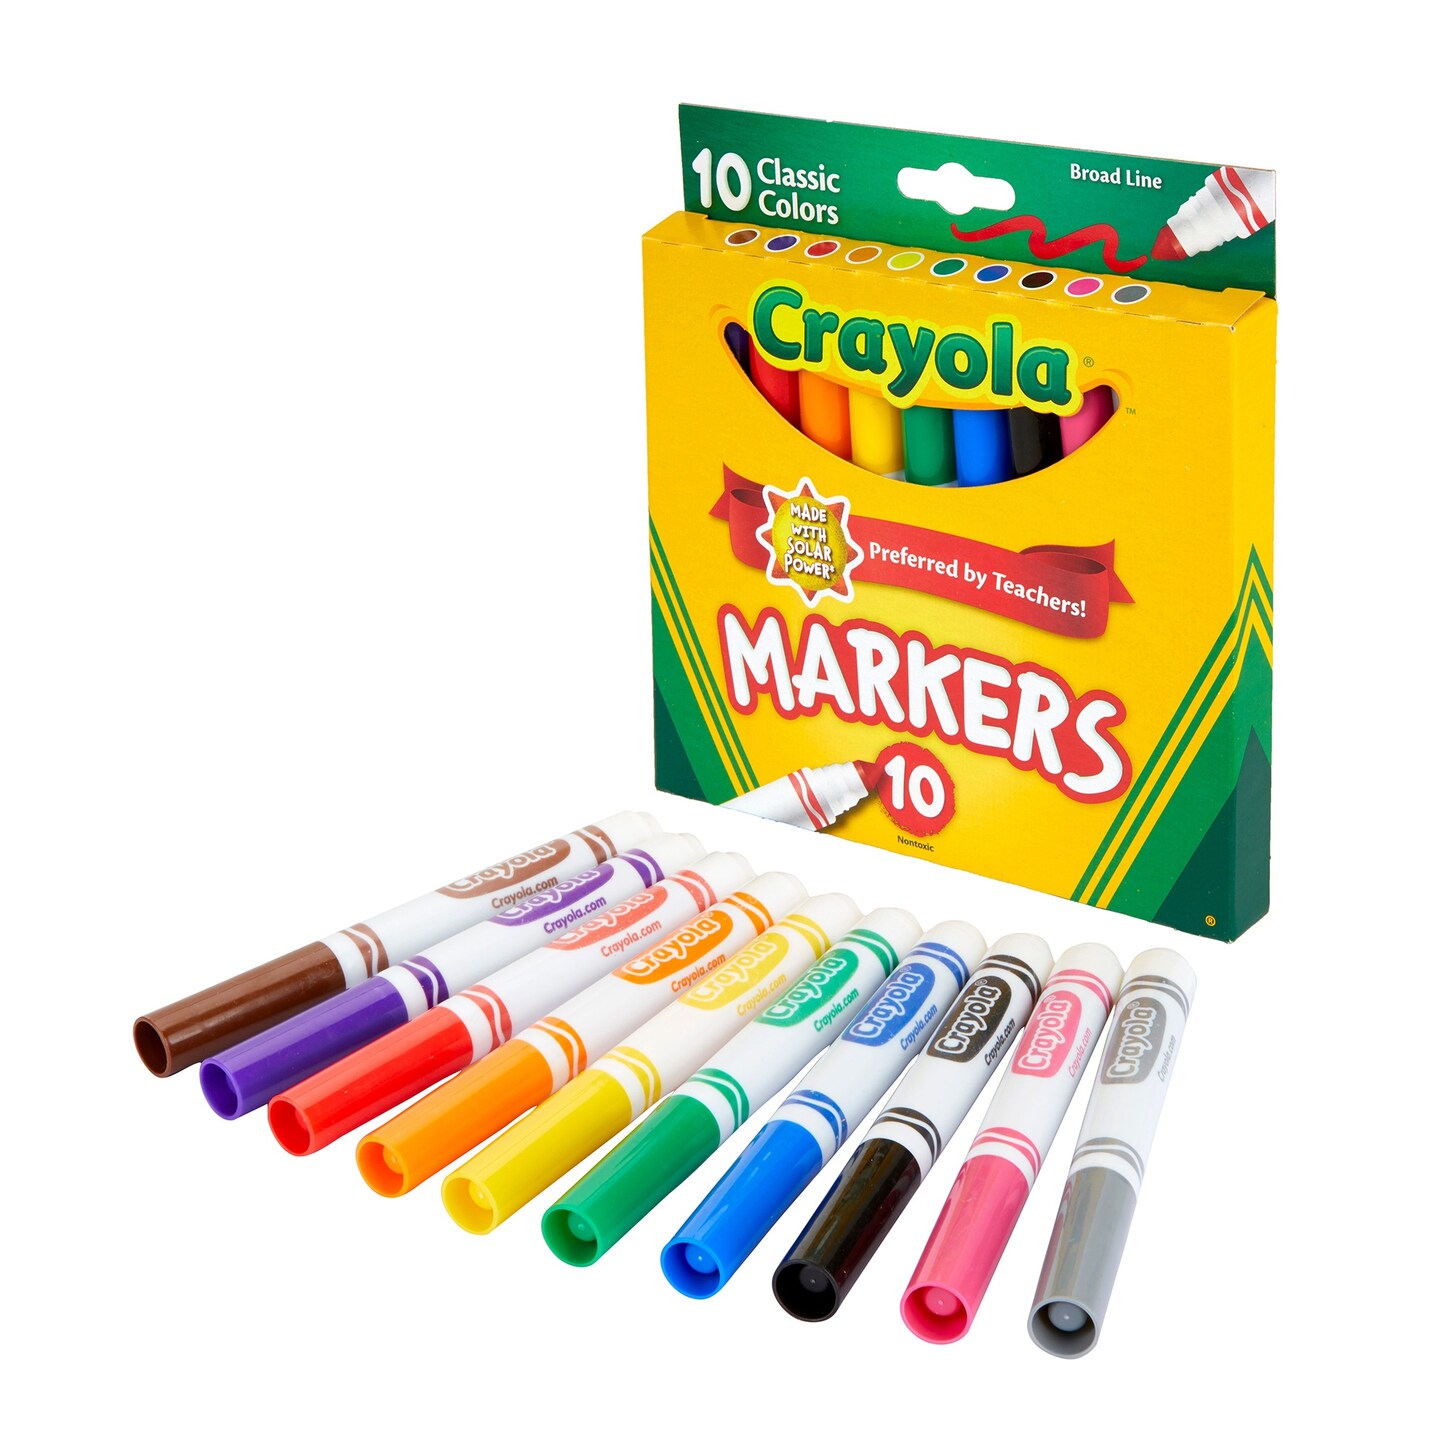 Green Crayola Crayons - 10 Pack